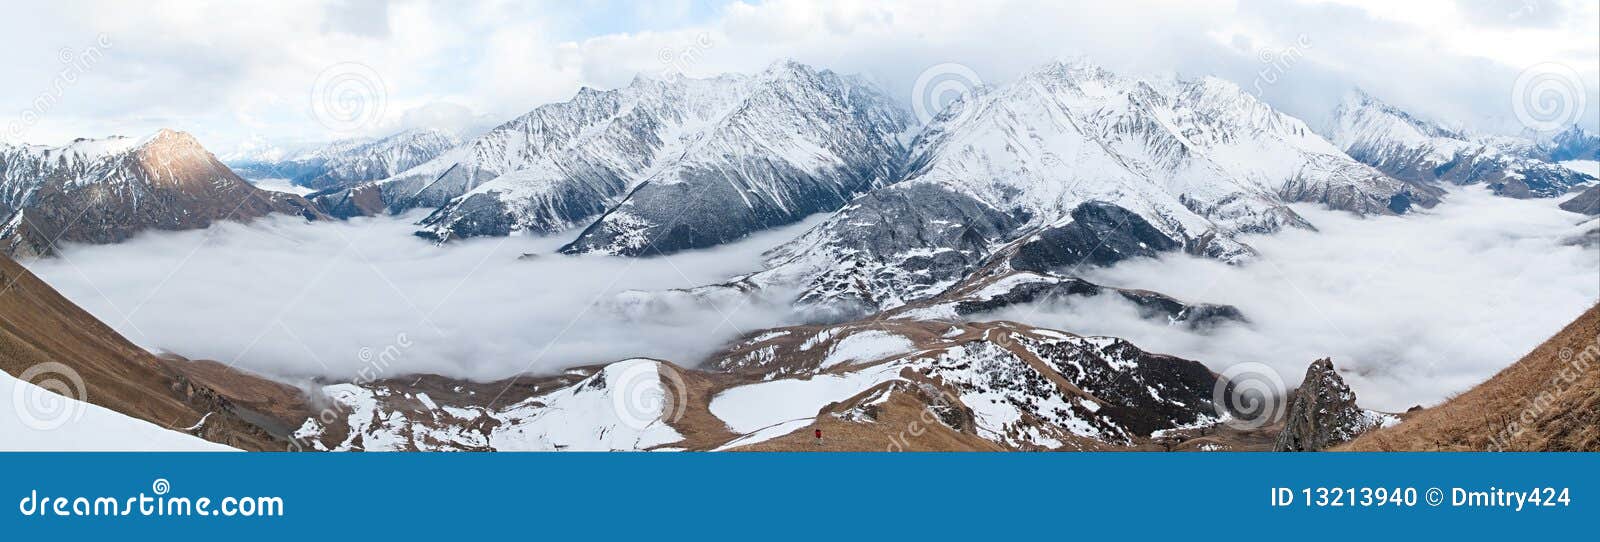 caucasus mountains panorama